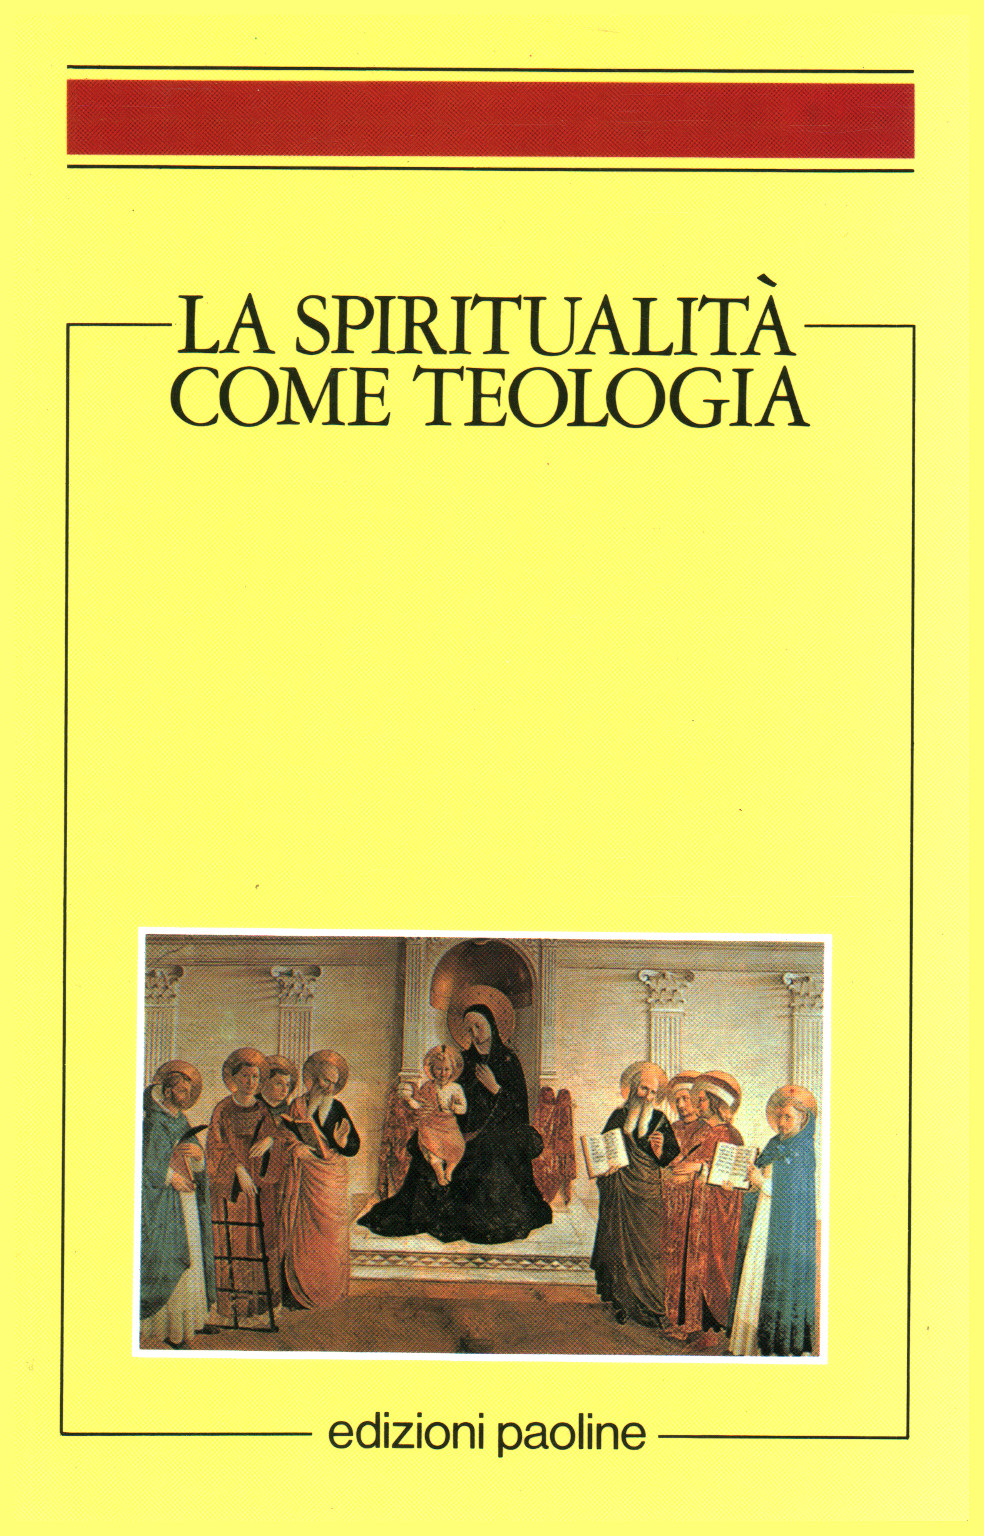 La spiritualità come teologia, s.a.